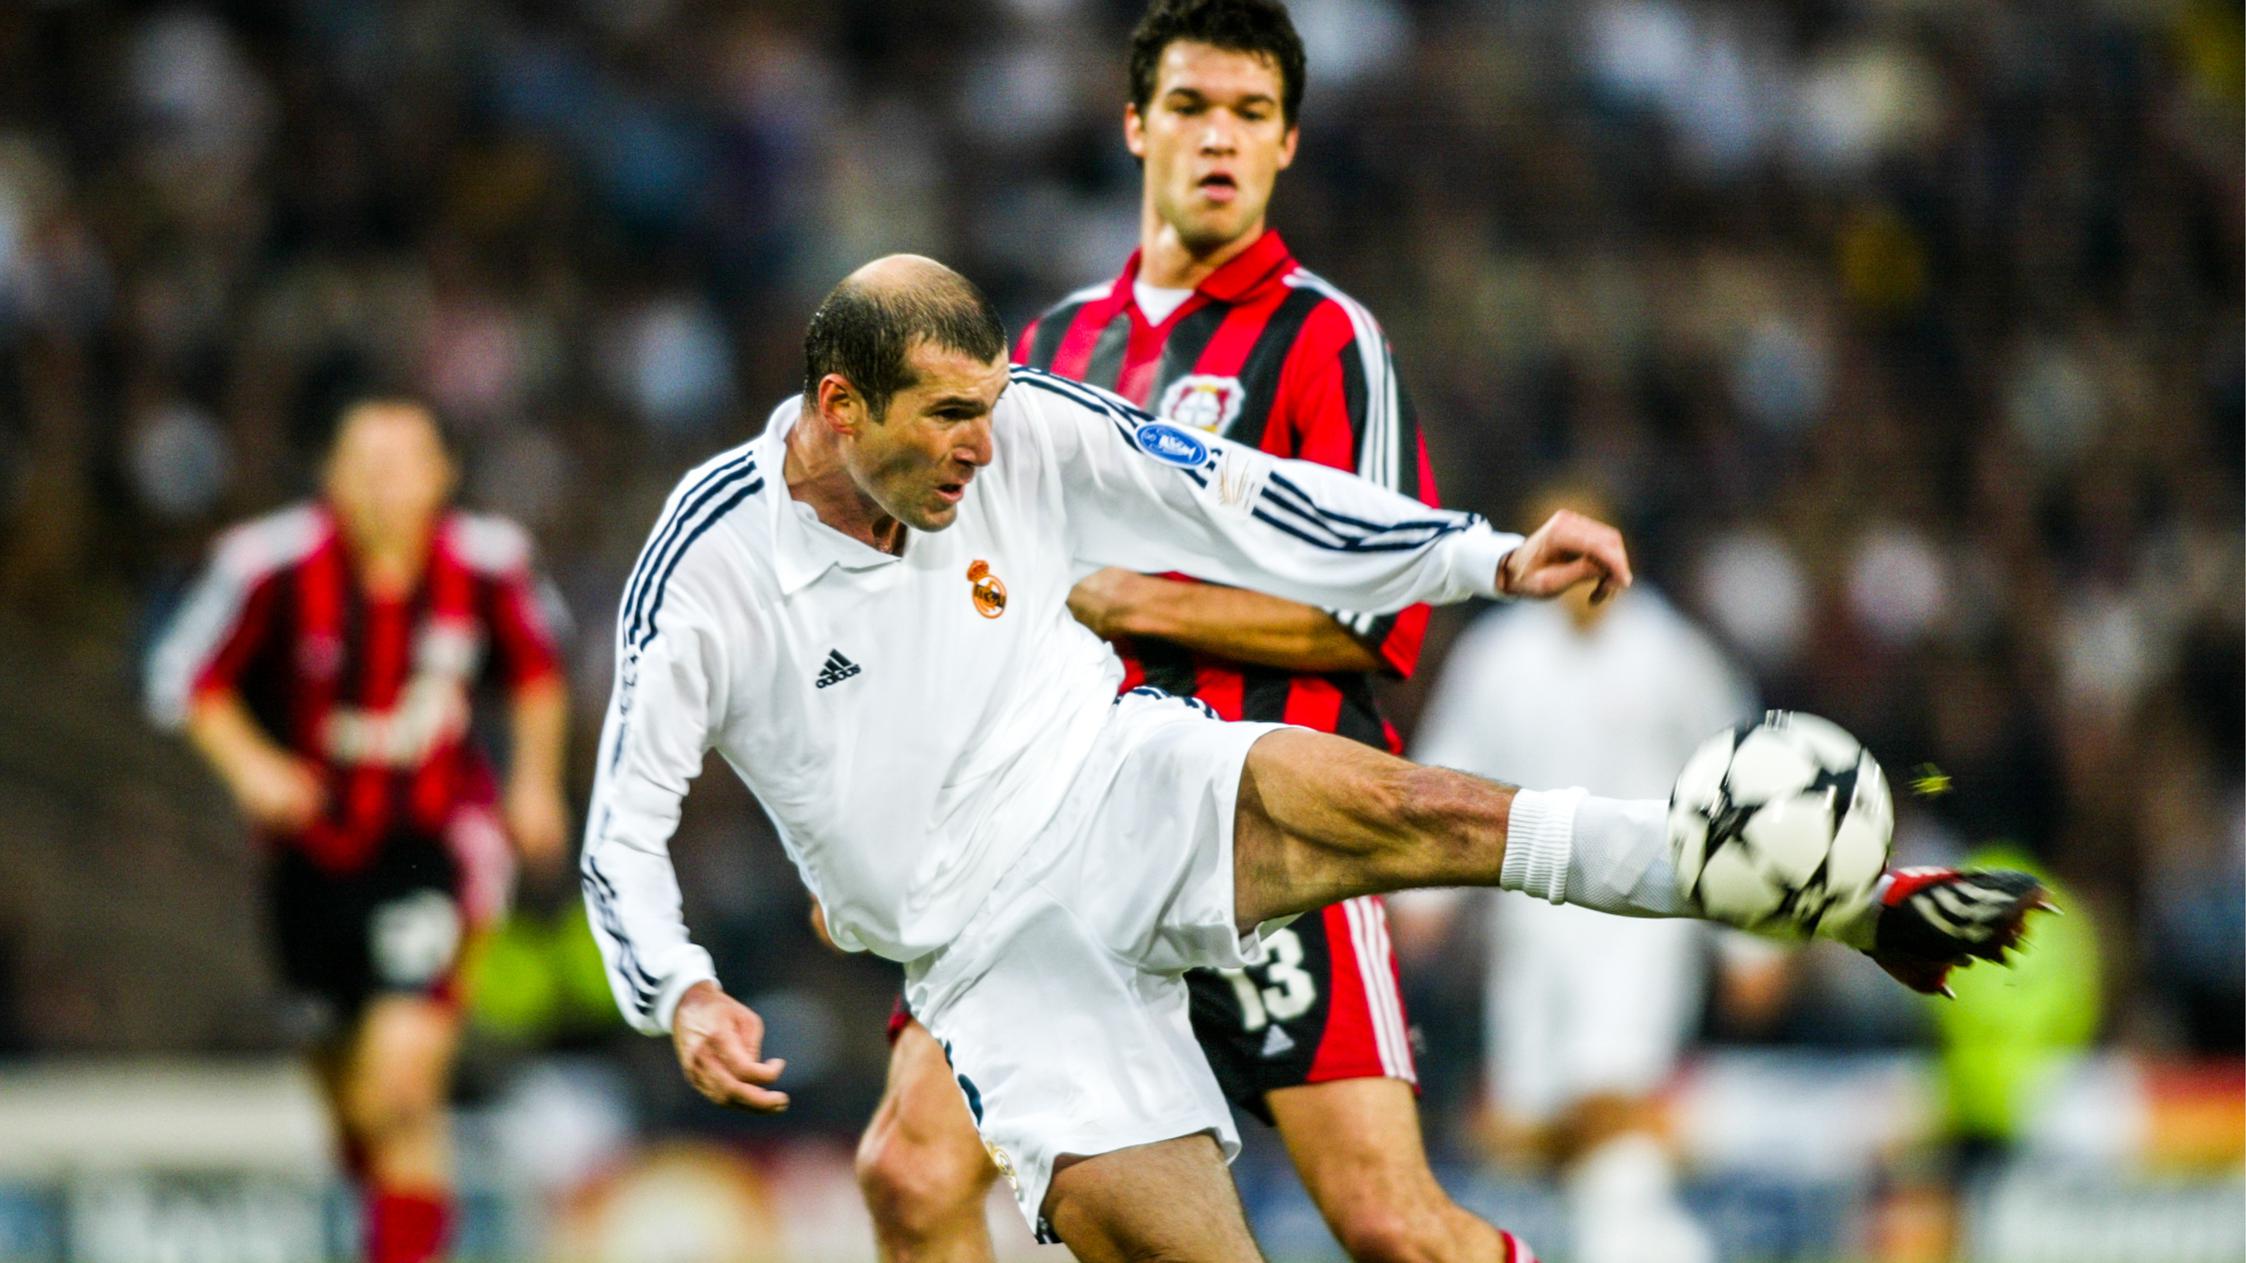 Áo đấu của cựu danh thủ Zidane được bán với giá 100.000 euro là tin tức hậu trường đáng chú ý ngày 13/11